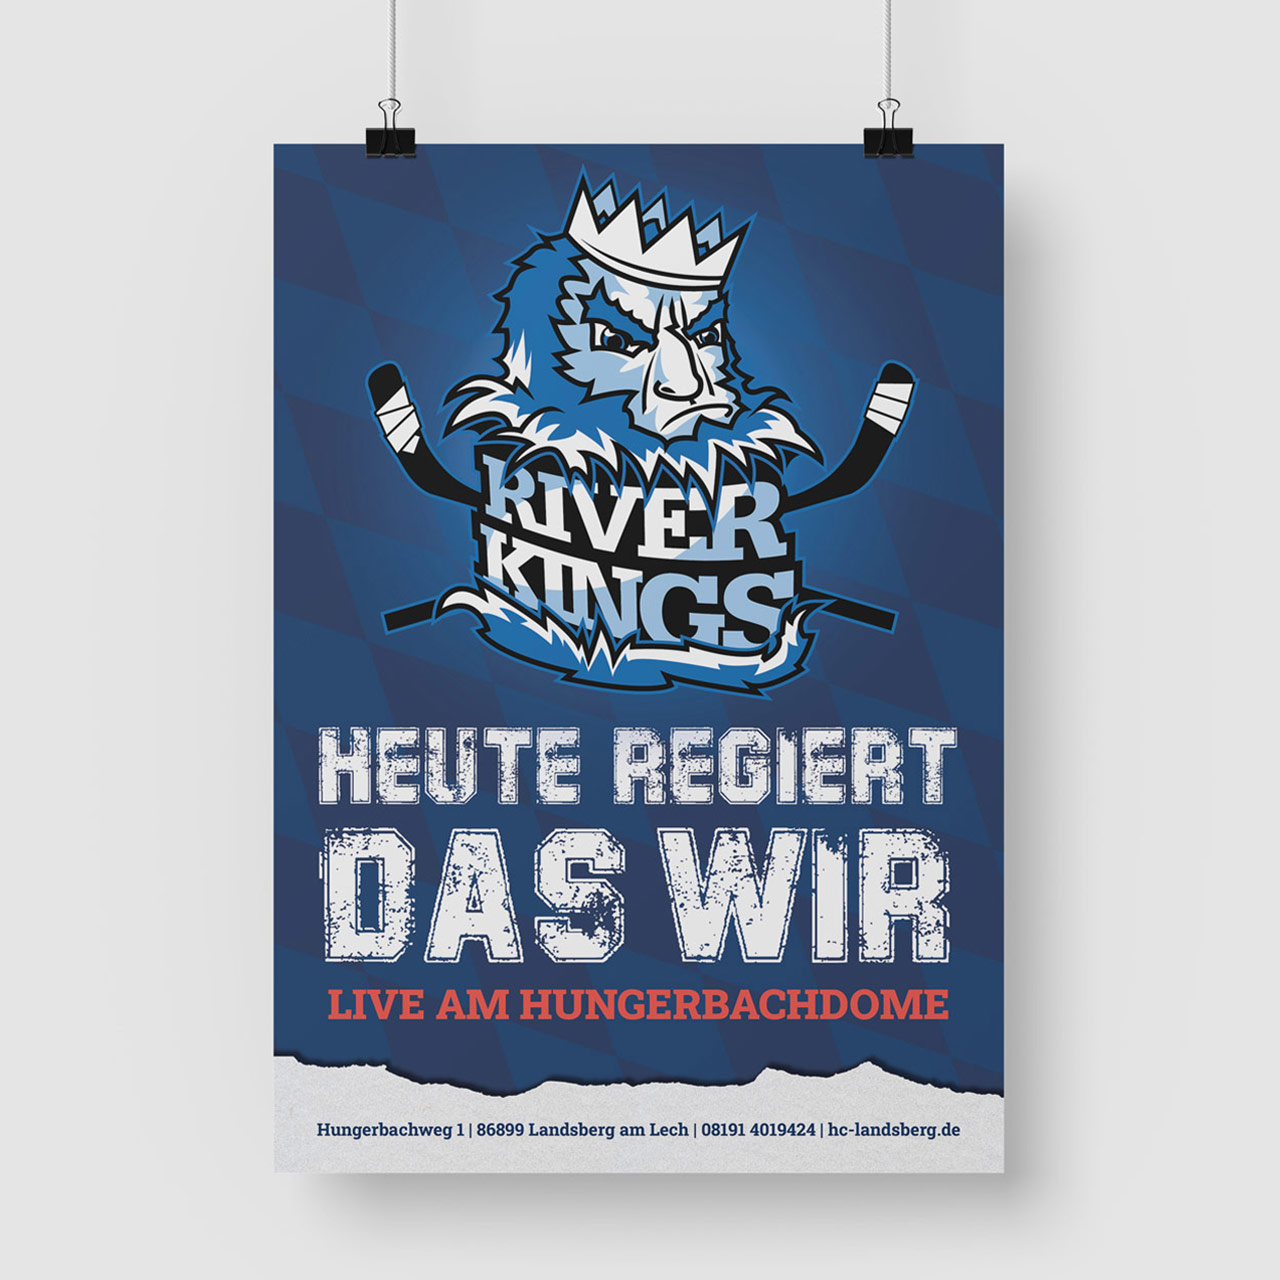 Hängendes Werbeplakat des HC Landsberg mit Slogan-Aufschrift "Hier regiert das wir" und Logo